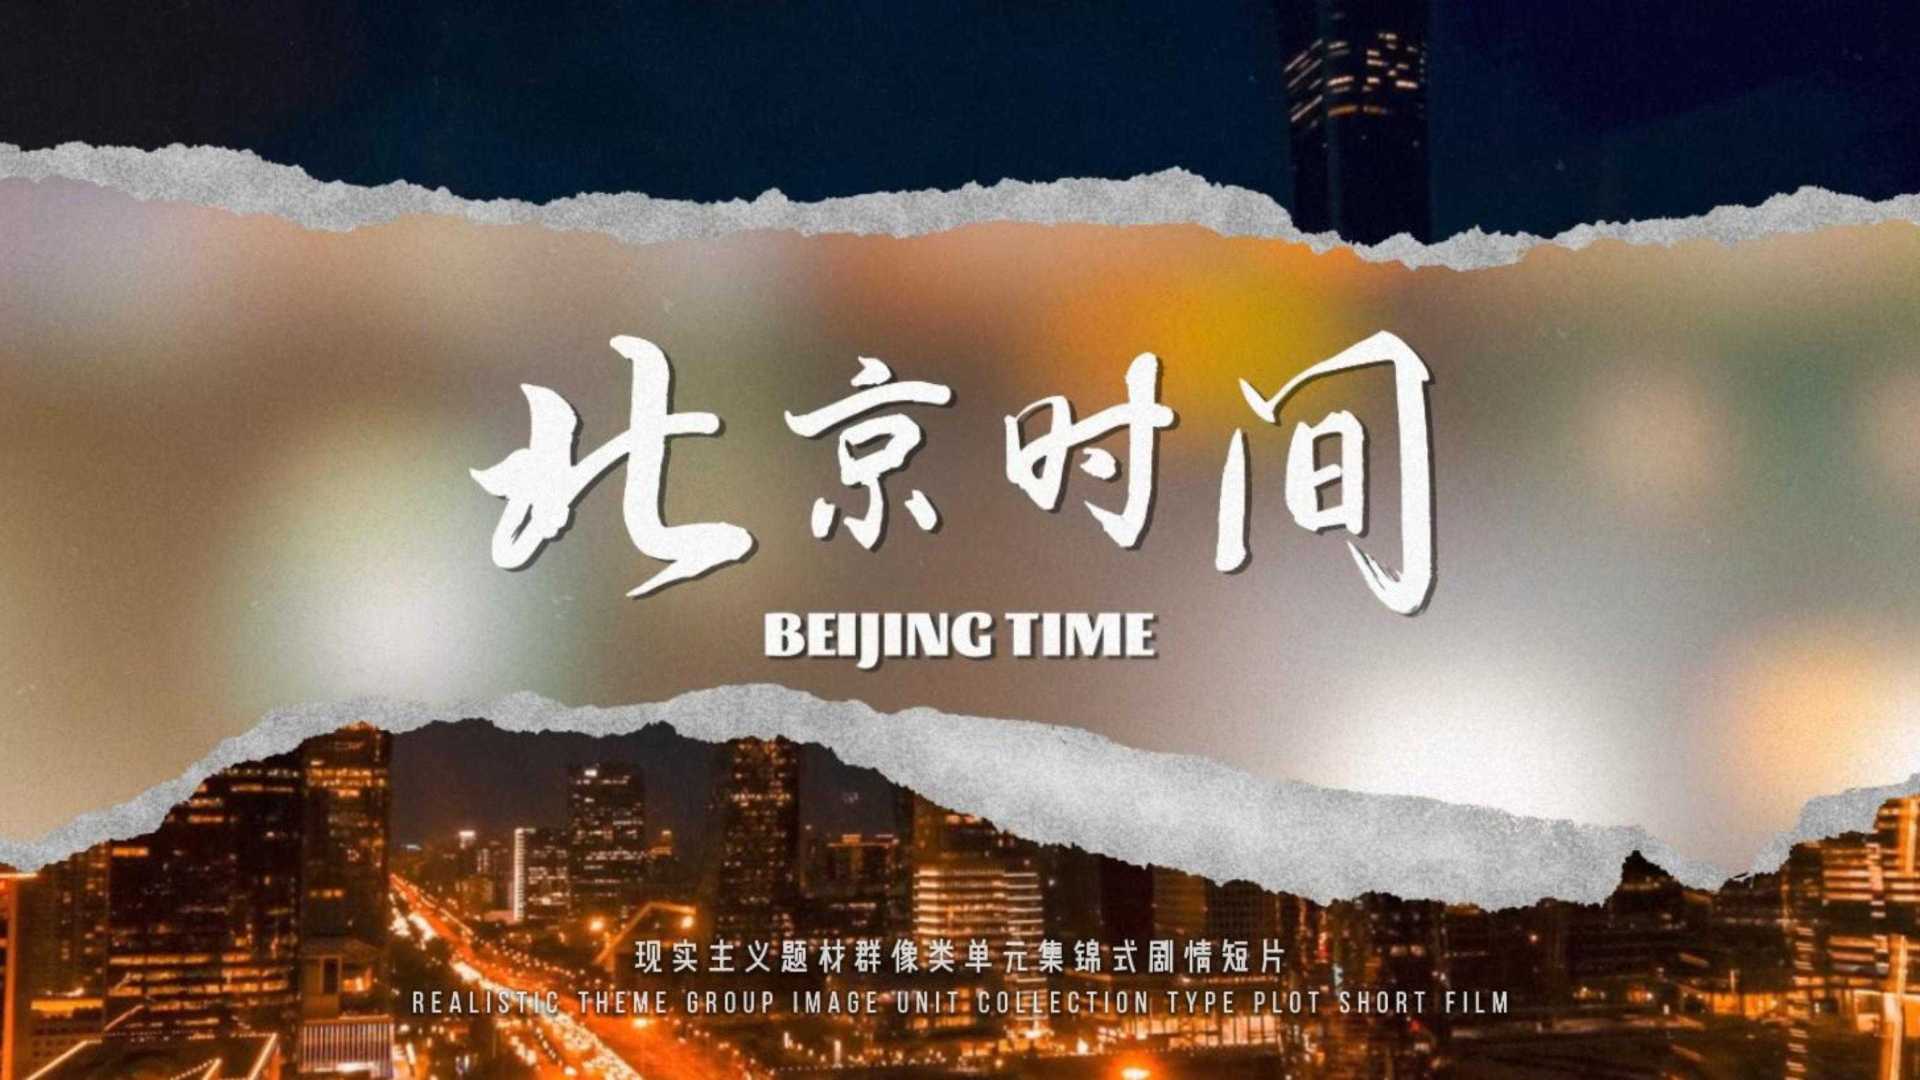 《北京时间》| 现实主义题材群像类单元集锦式剧情短片